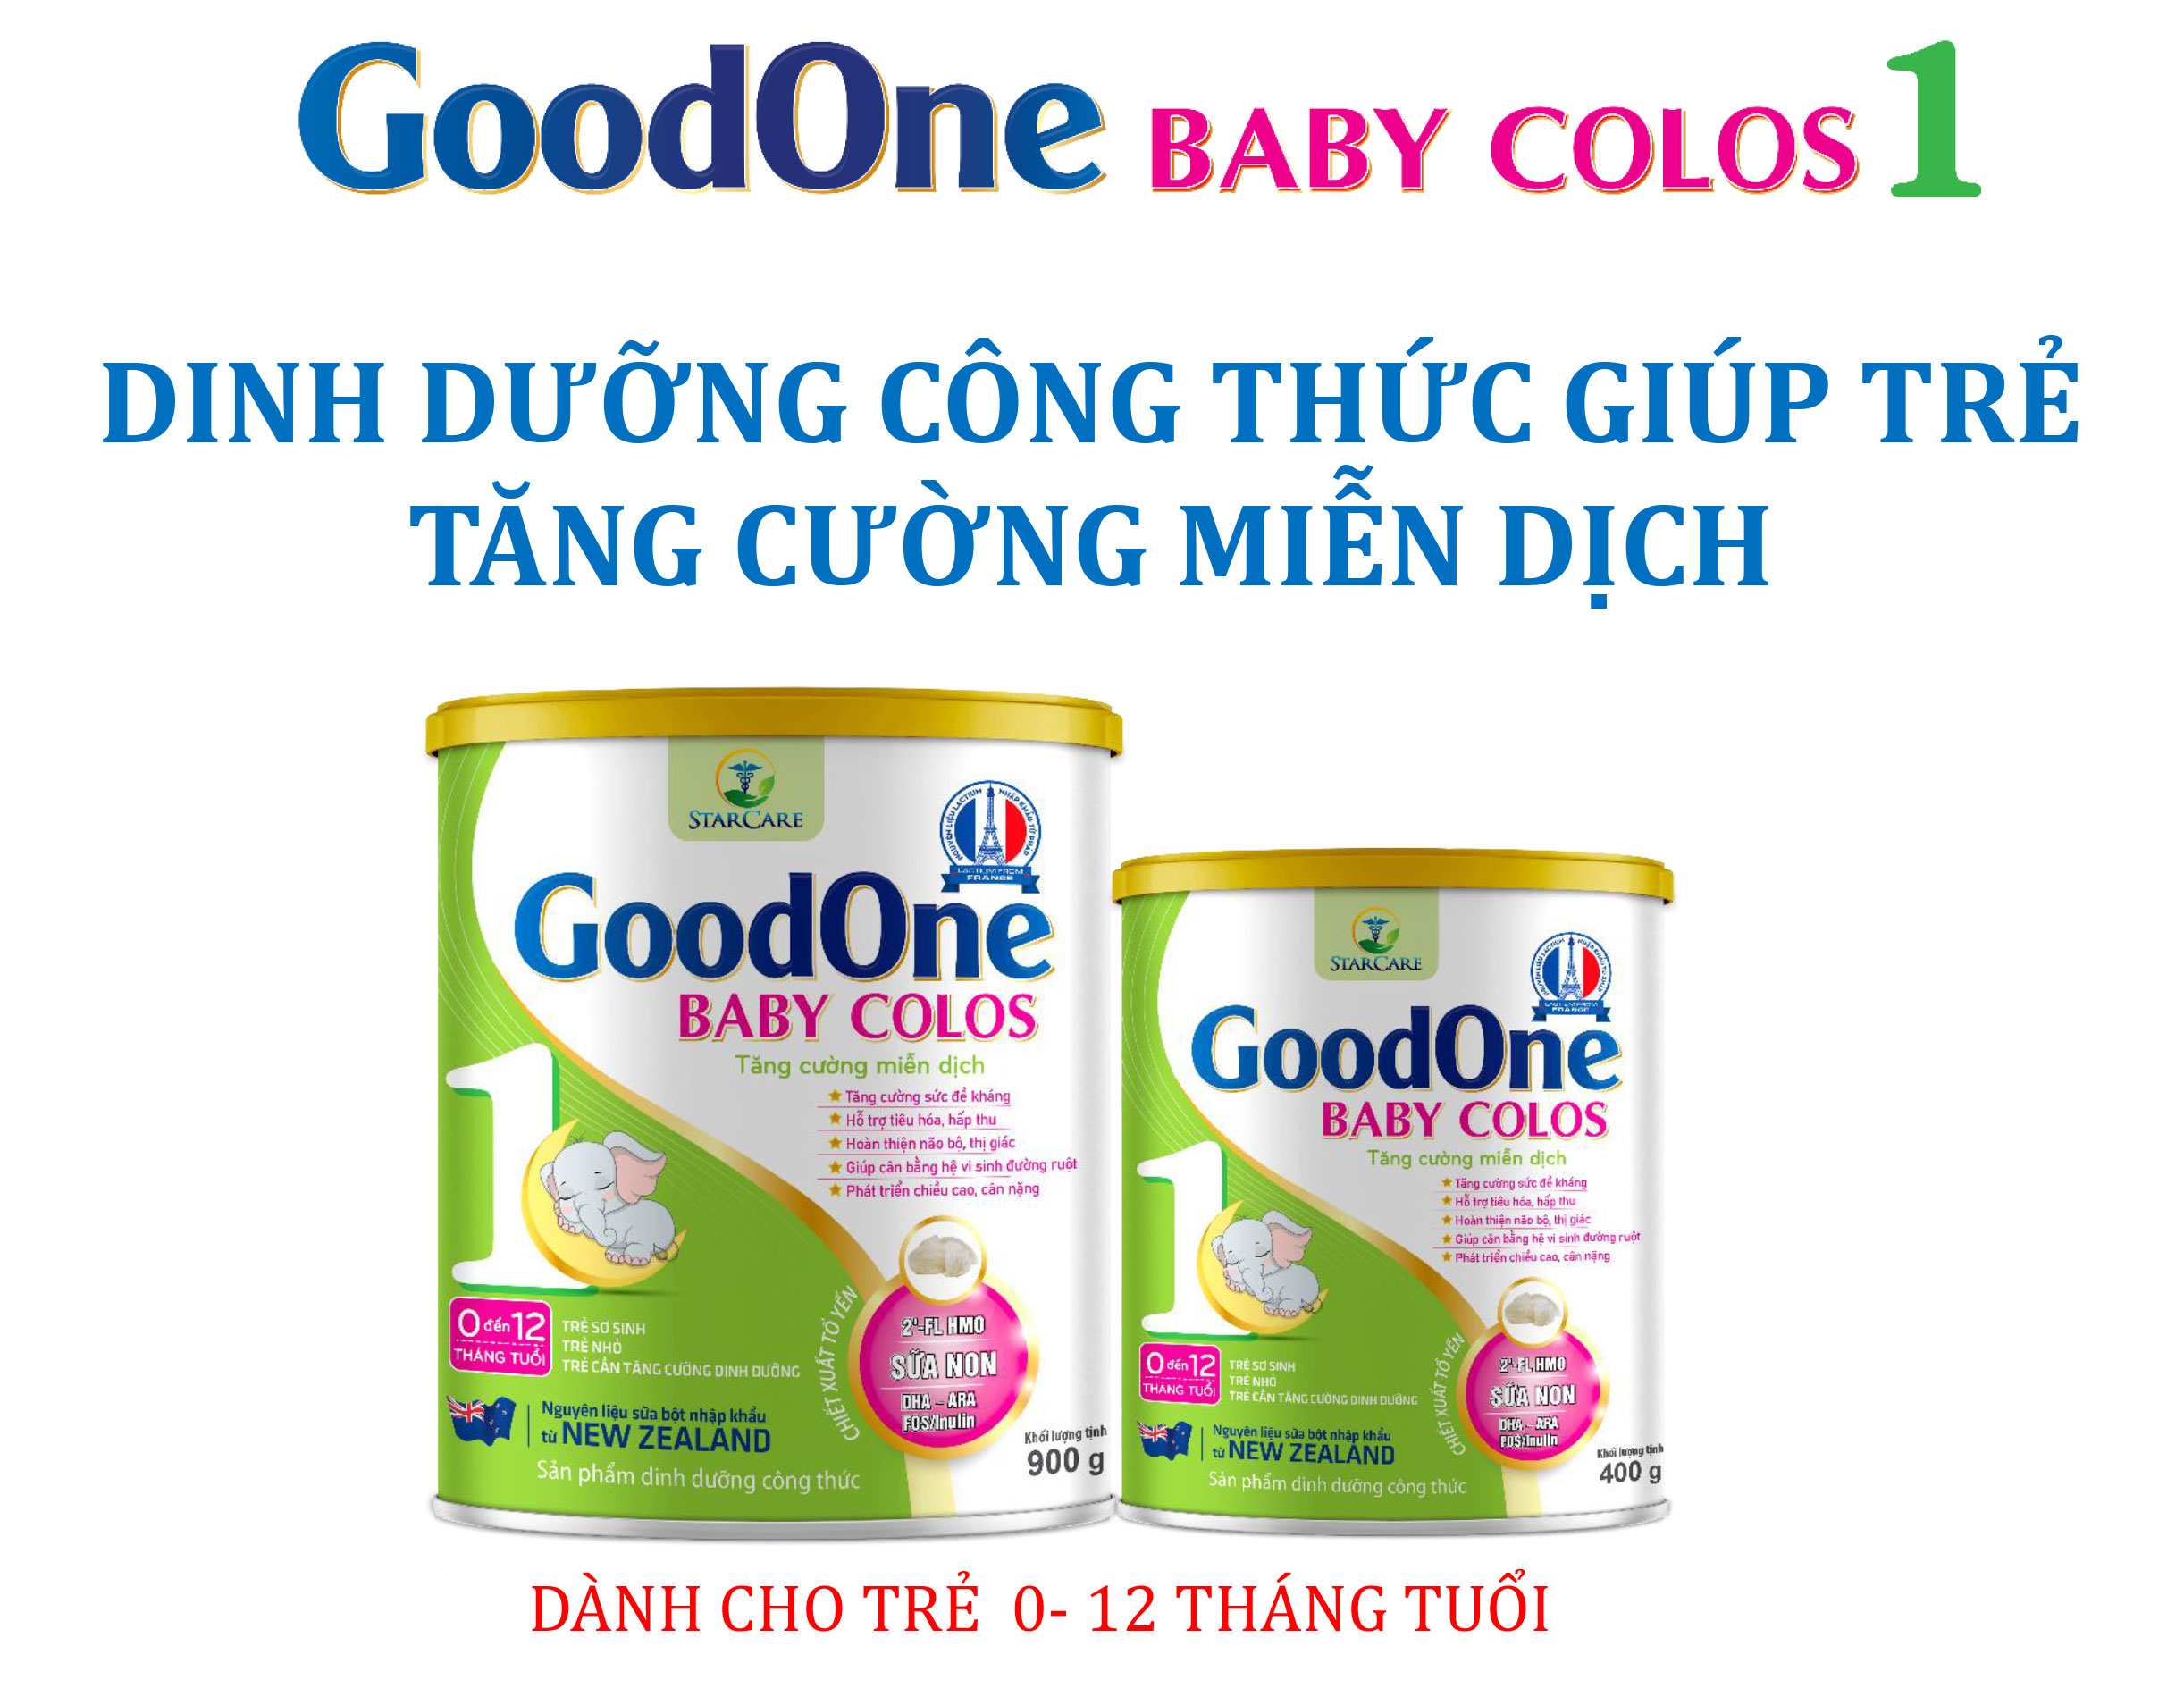 Sữa GoodOne Baby Colos 1 có gì đặc biệt?